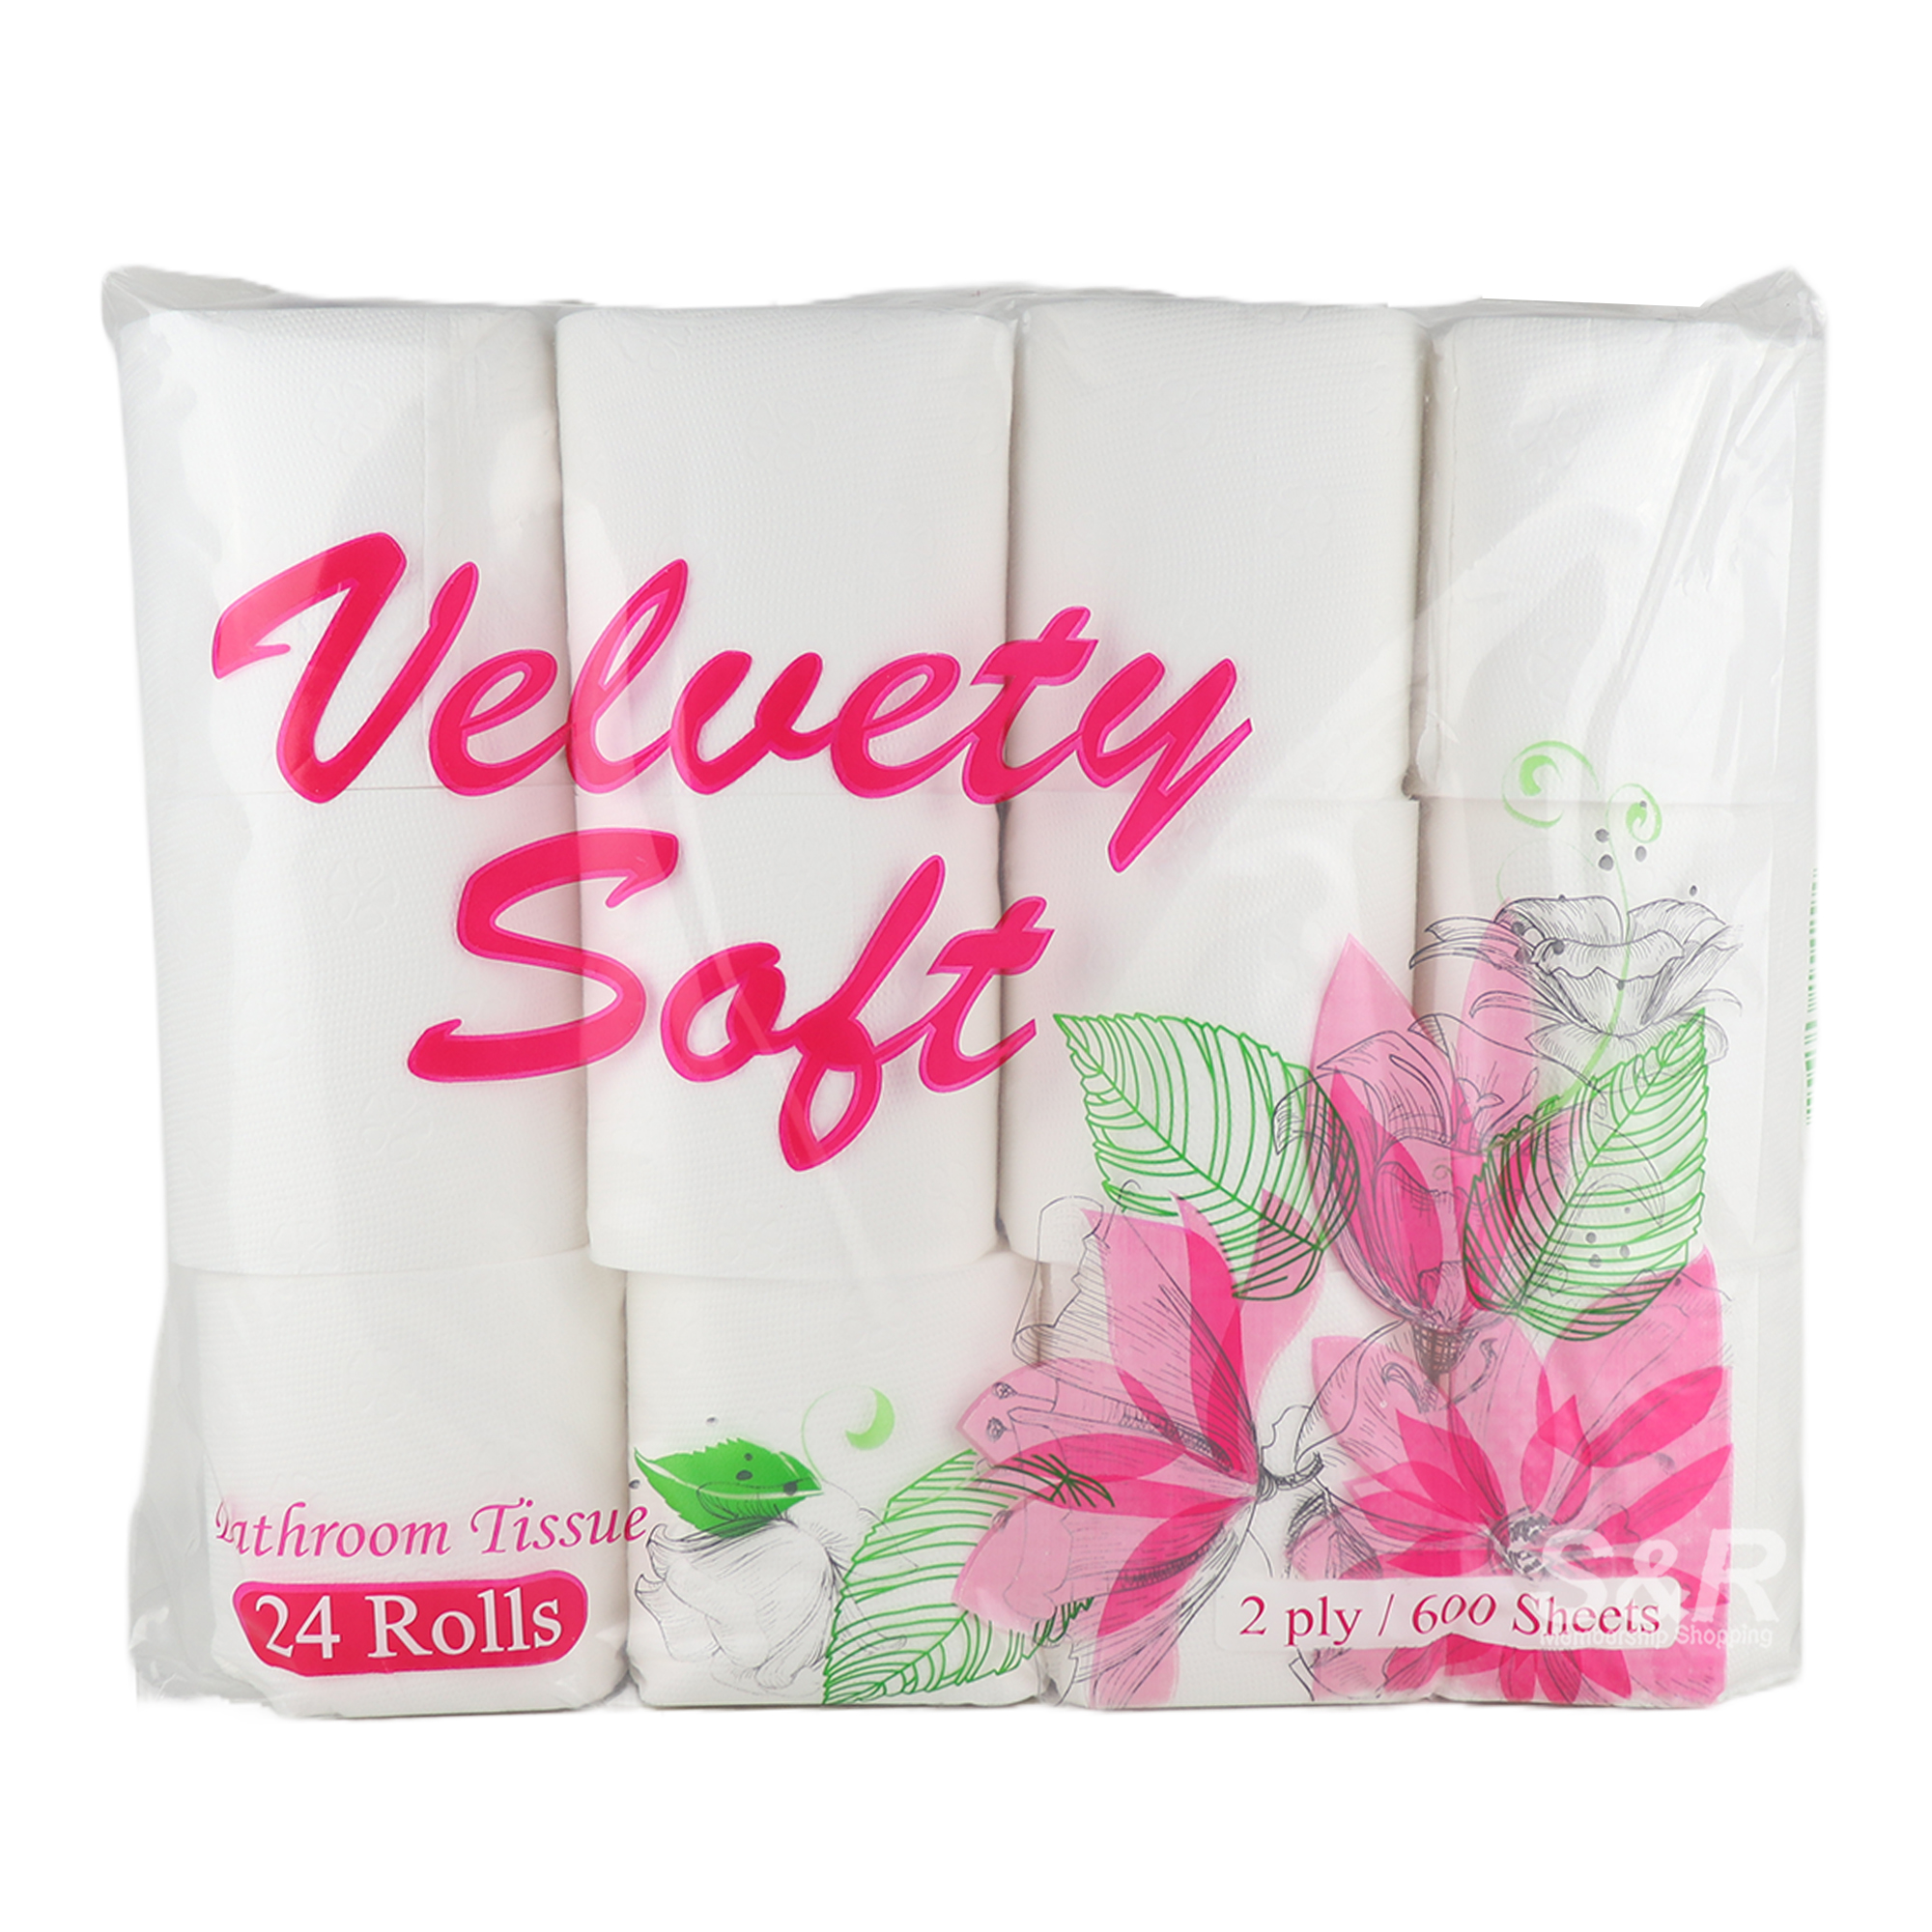 Velvety Soft Bathroom Tissue 2ply/600 Sheets x 24 Rolls